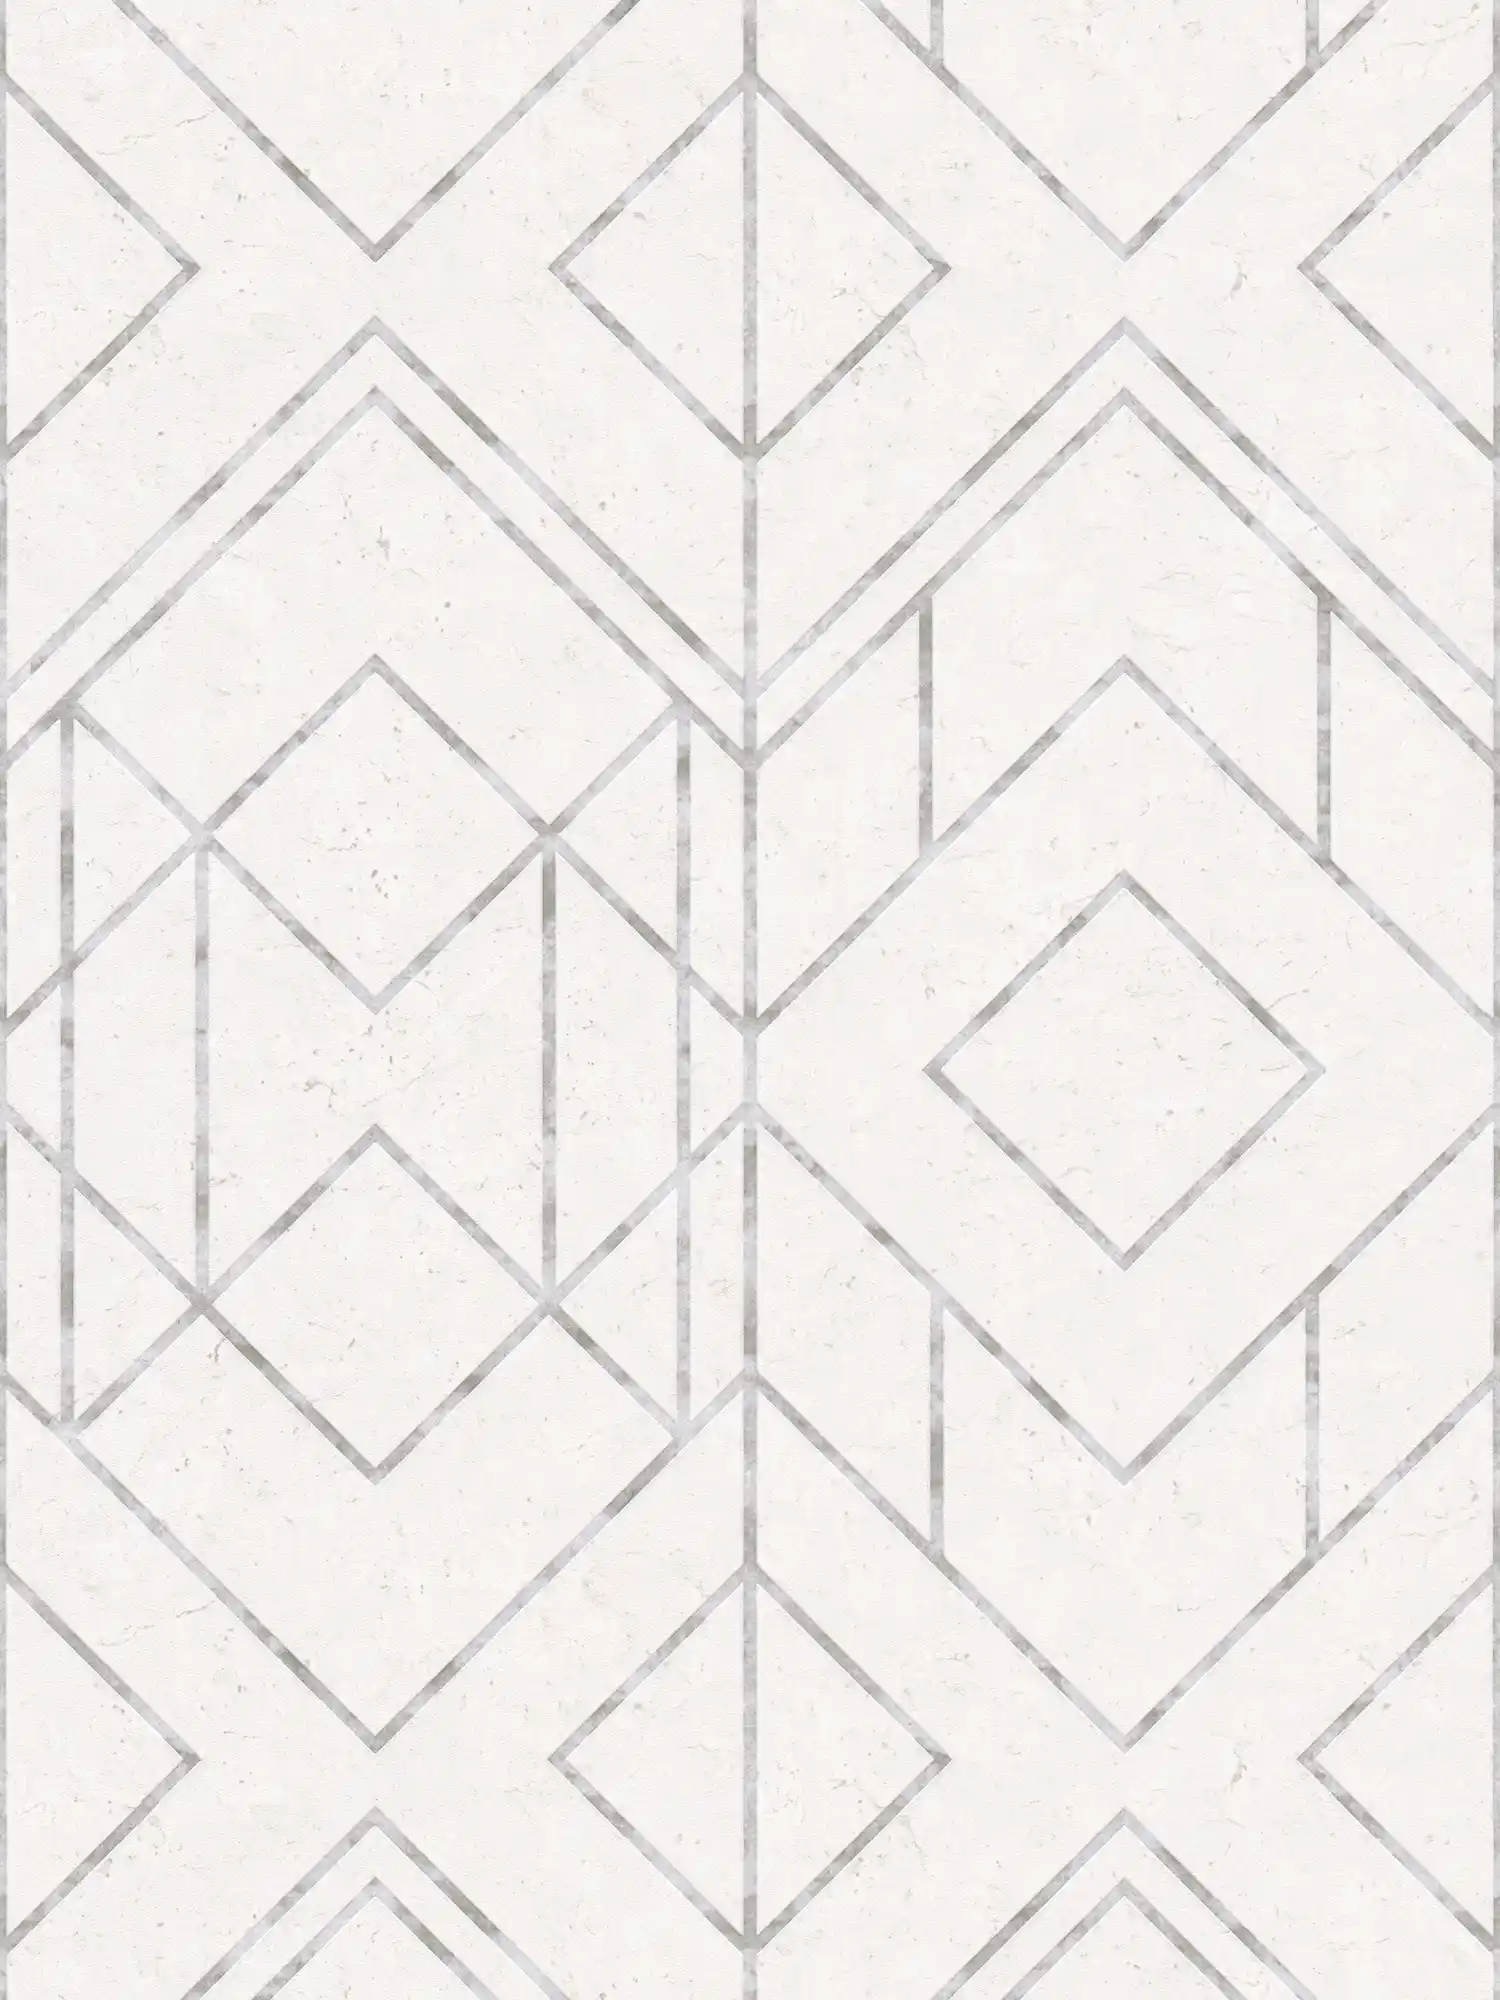 Carta da parati con motivi grafici e accenti metallici - grigio, metallizzato, bianco
